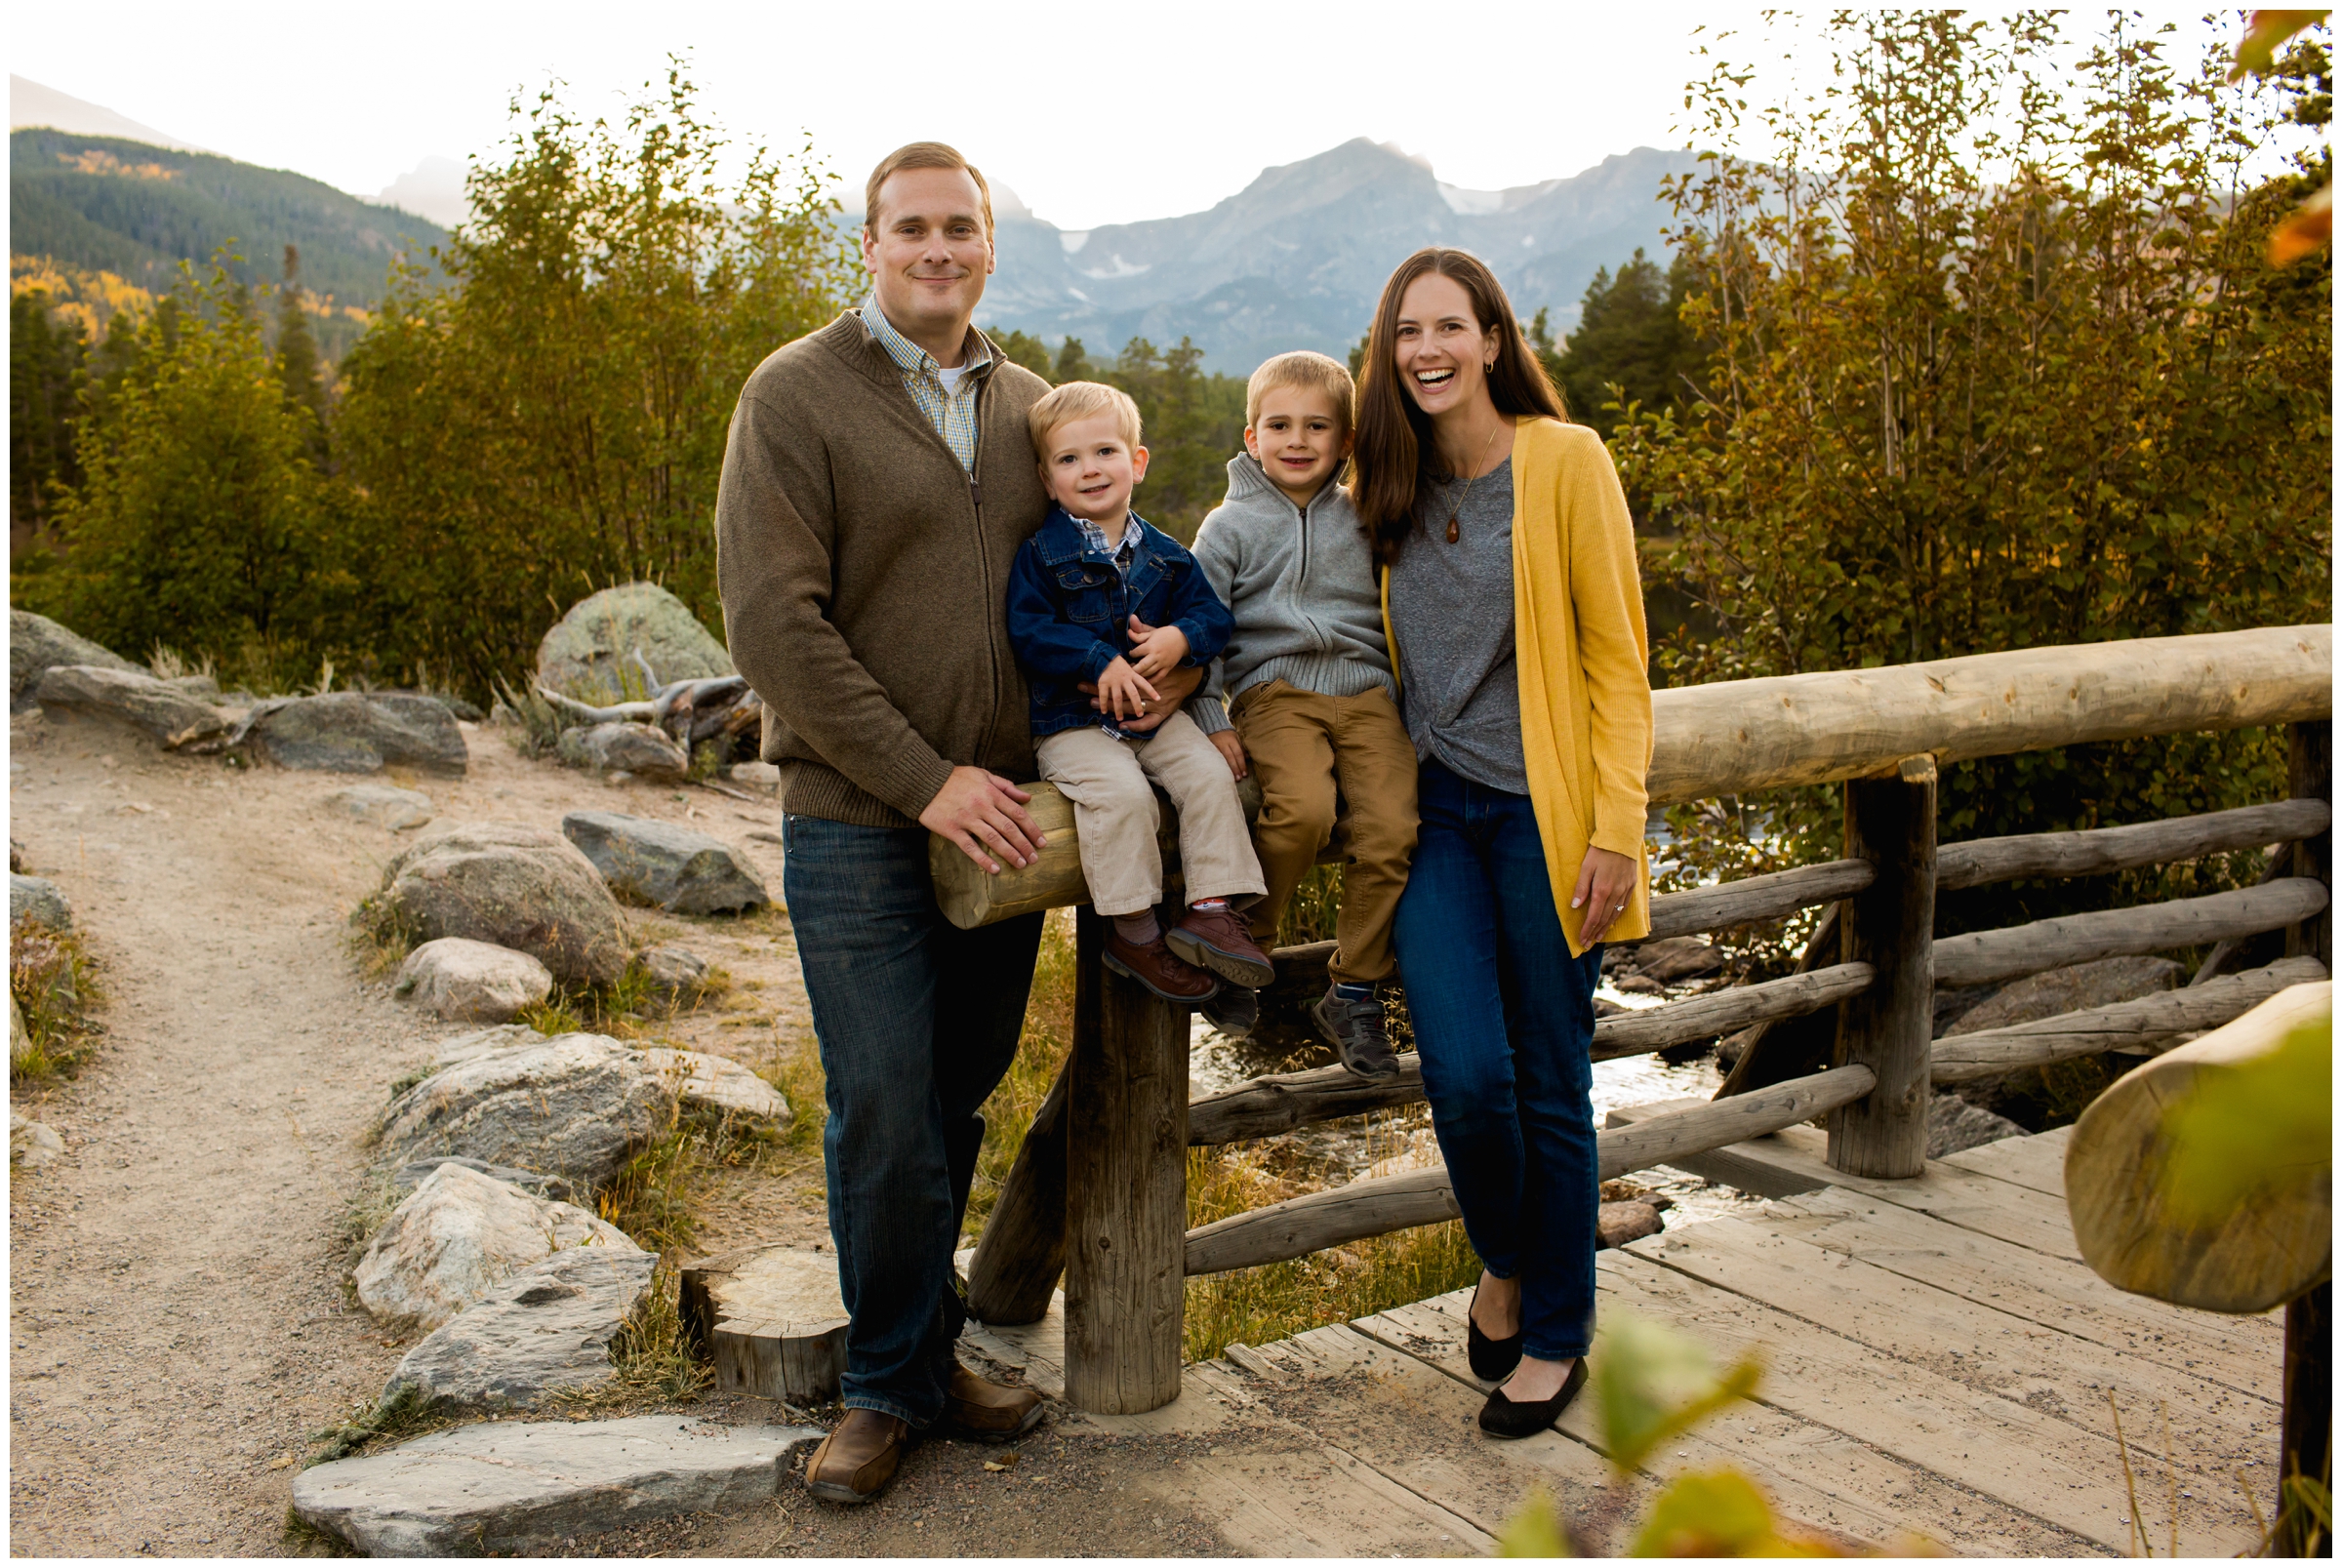 Estes Park Colorado family photos in Rocky Mountain National Park 